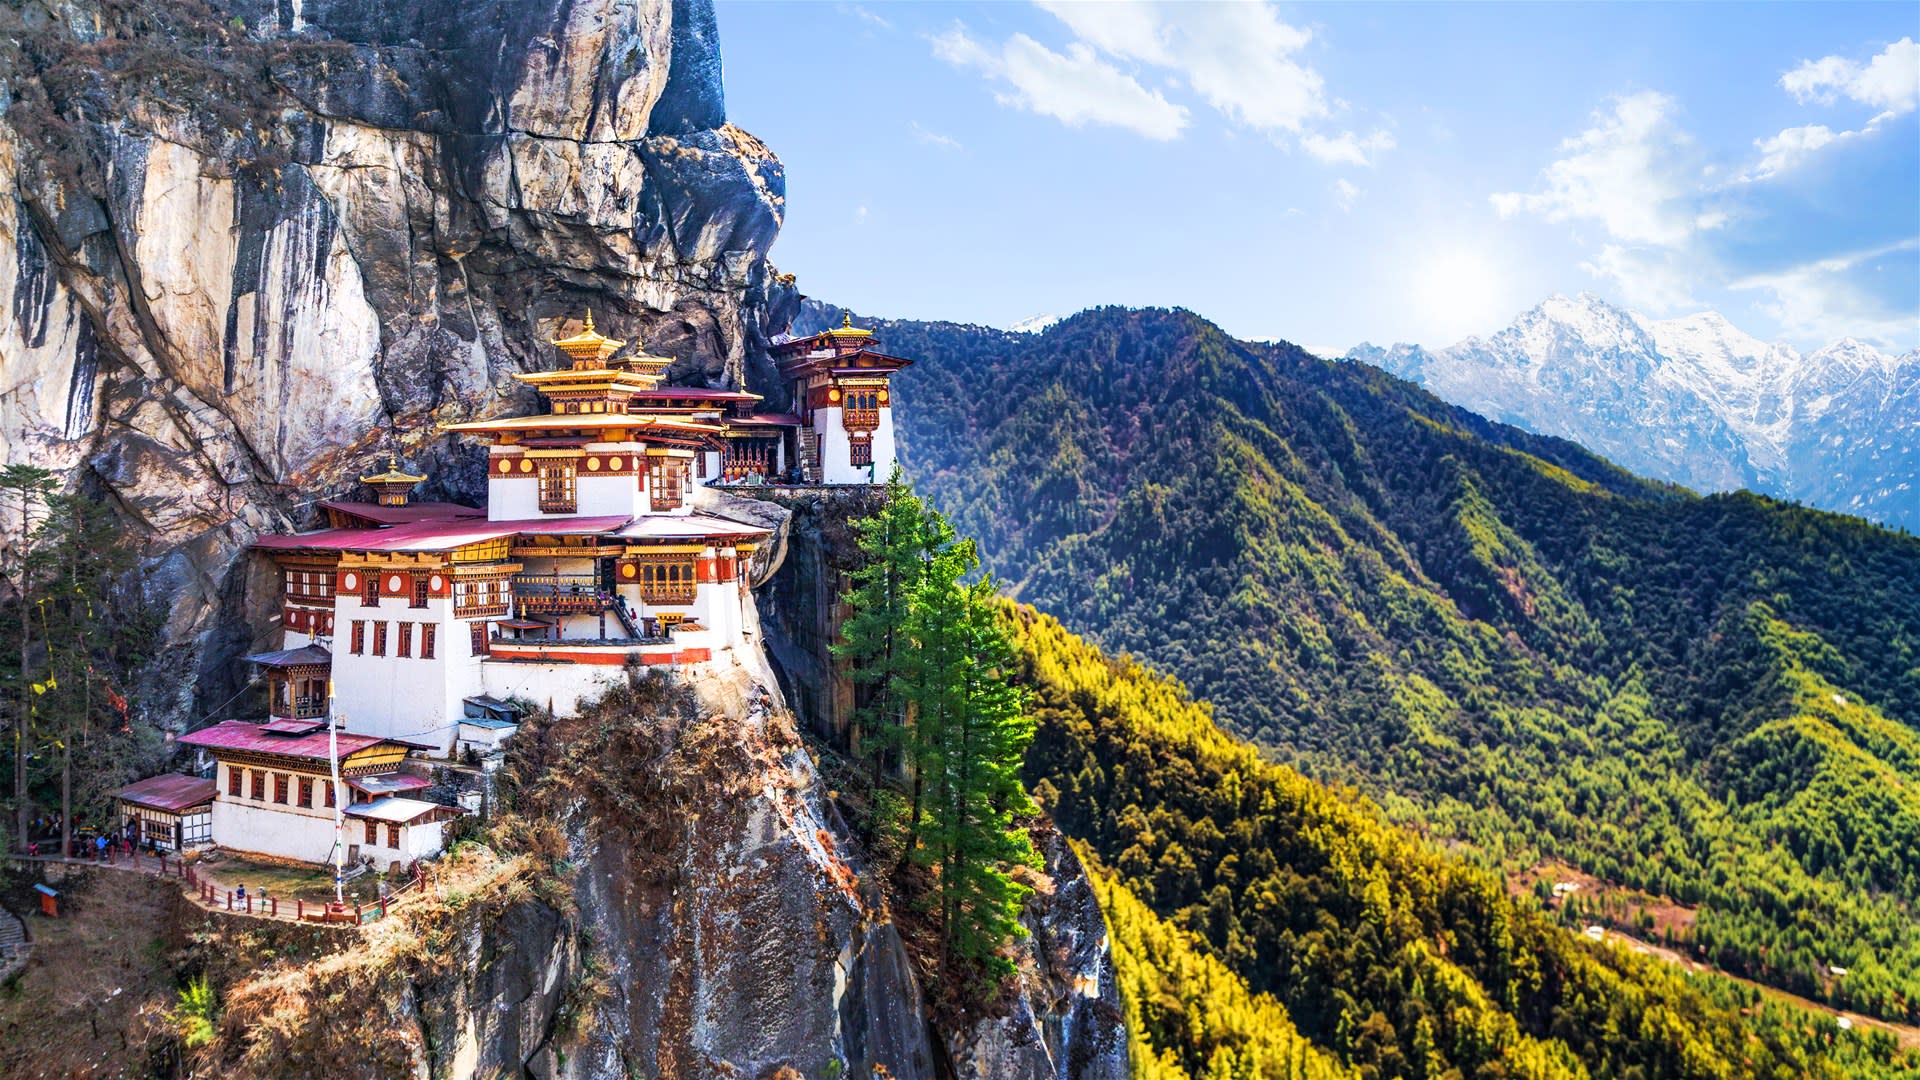 Bhutan - Bhutan Best , HD Wallpaper & Backgrounds